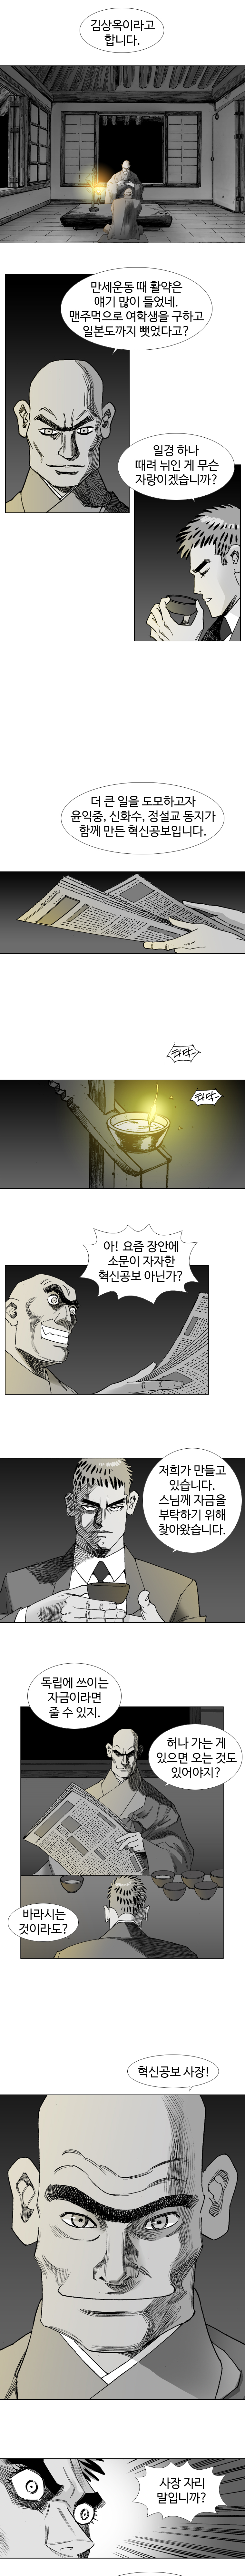 웹툰 백초월 3화-6